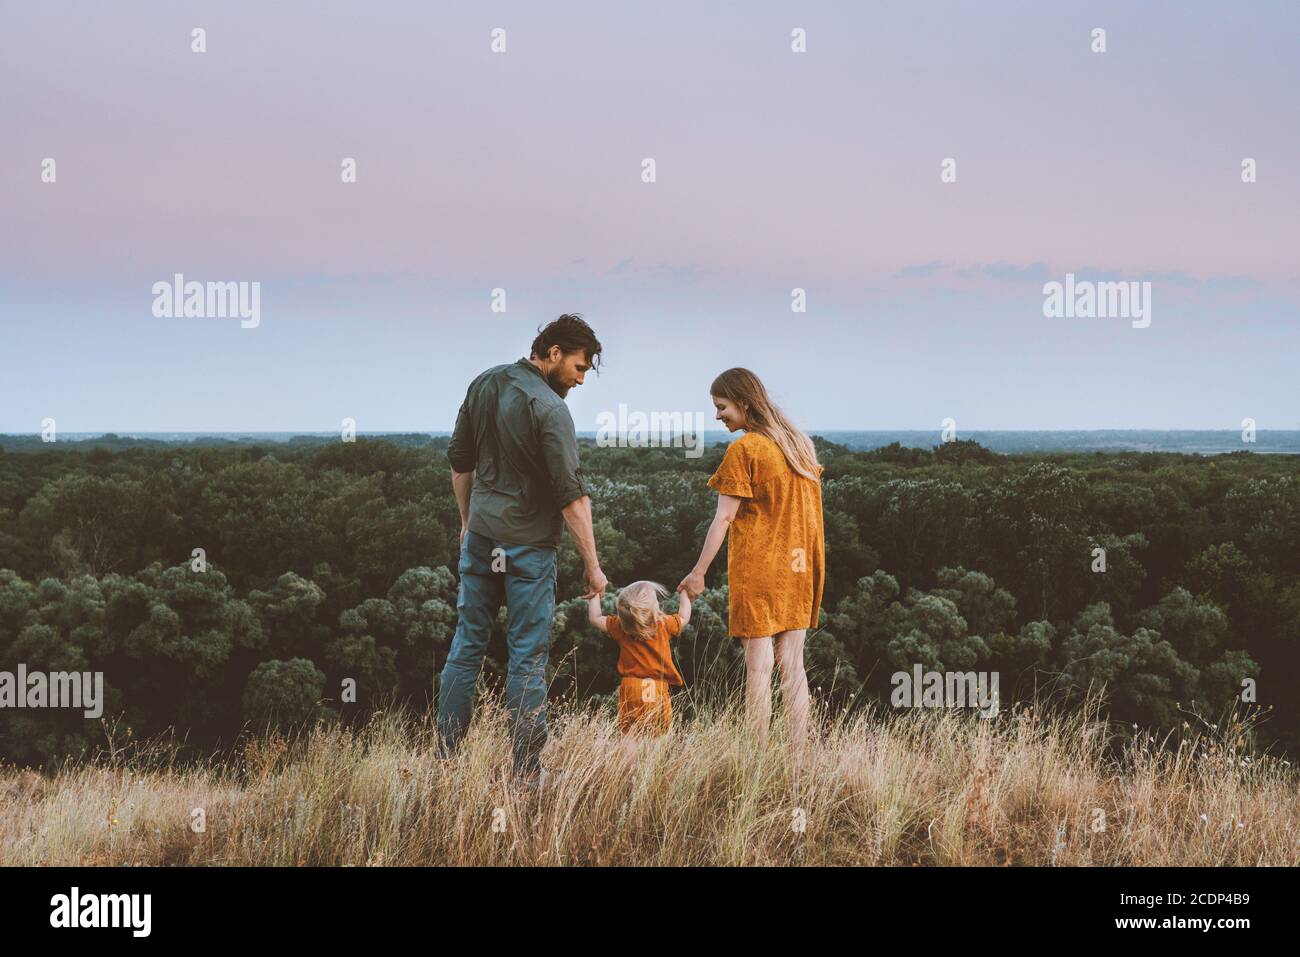 Famiglia genitori madre e padre con bambino che tiene le mani che camminano outdoor insieme sano stile di vita rurale natura paesaggio forestale Foto Stock